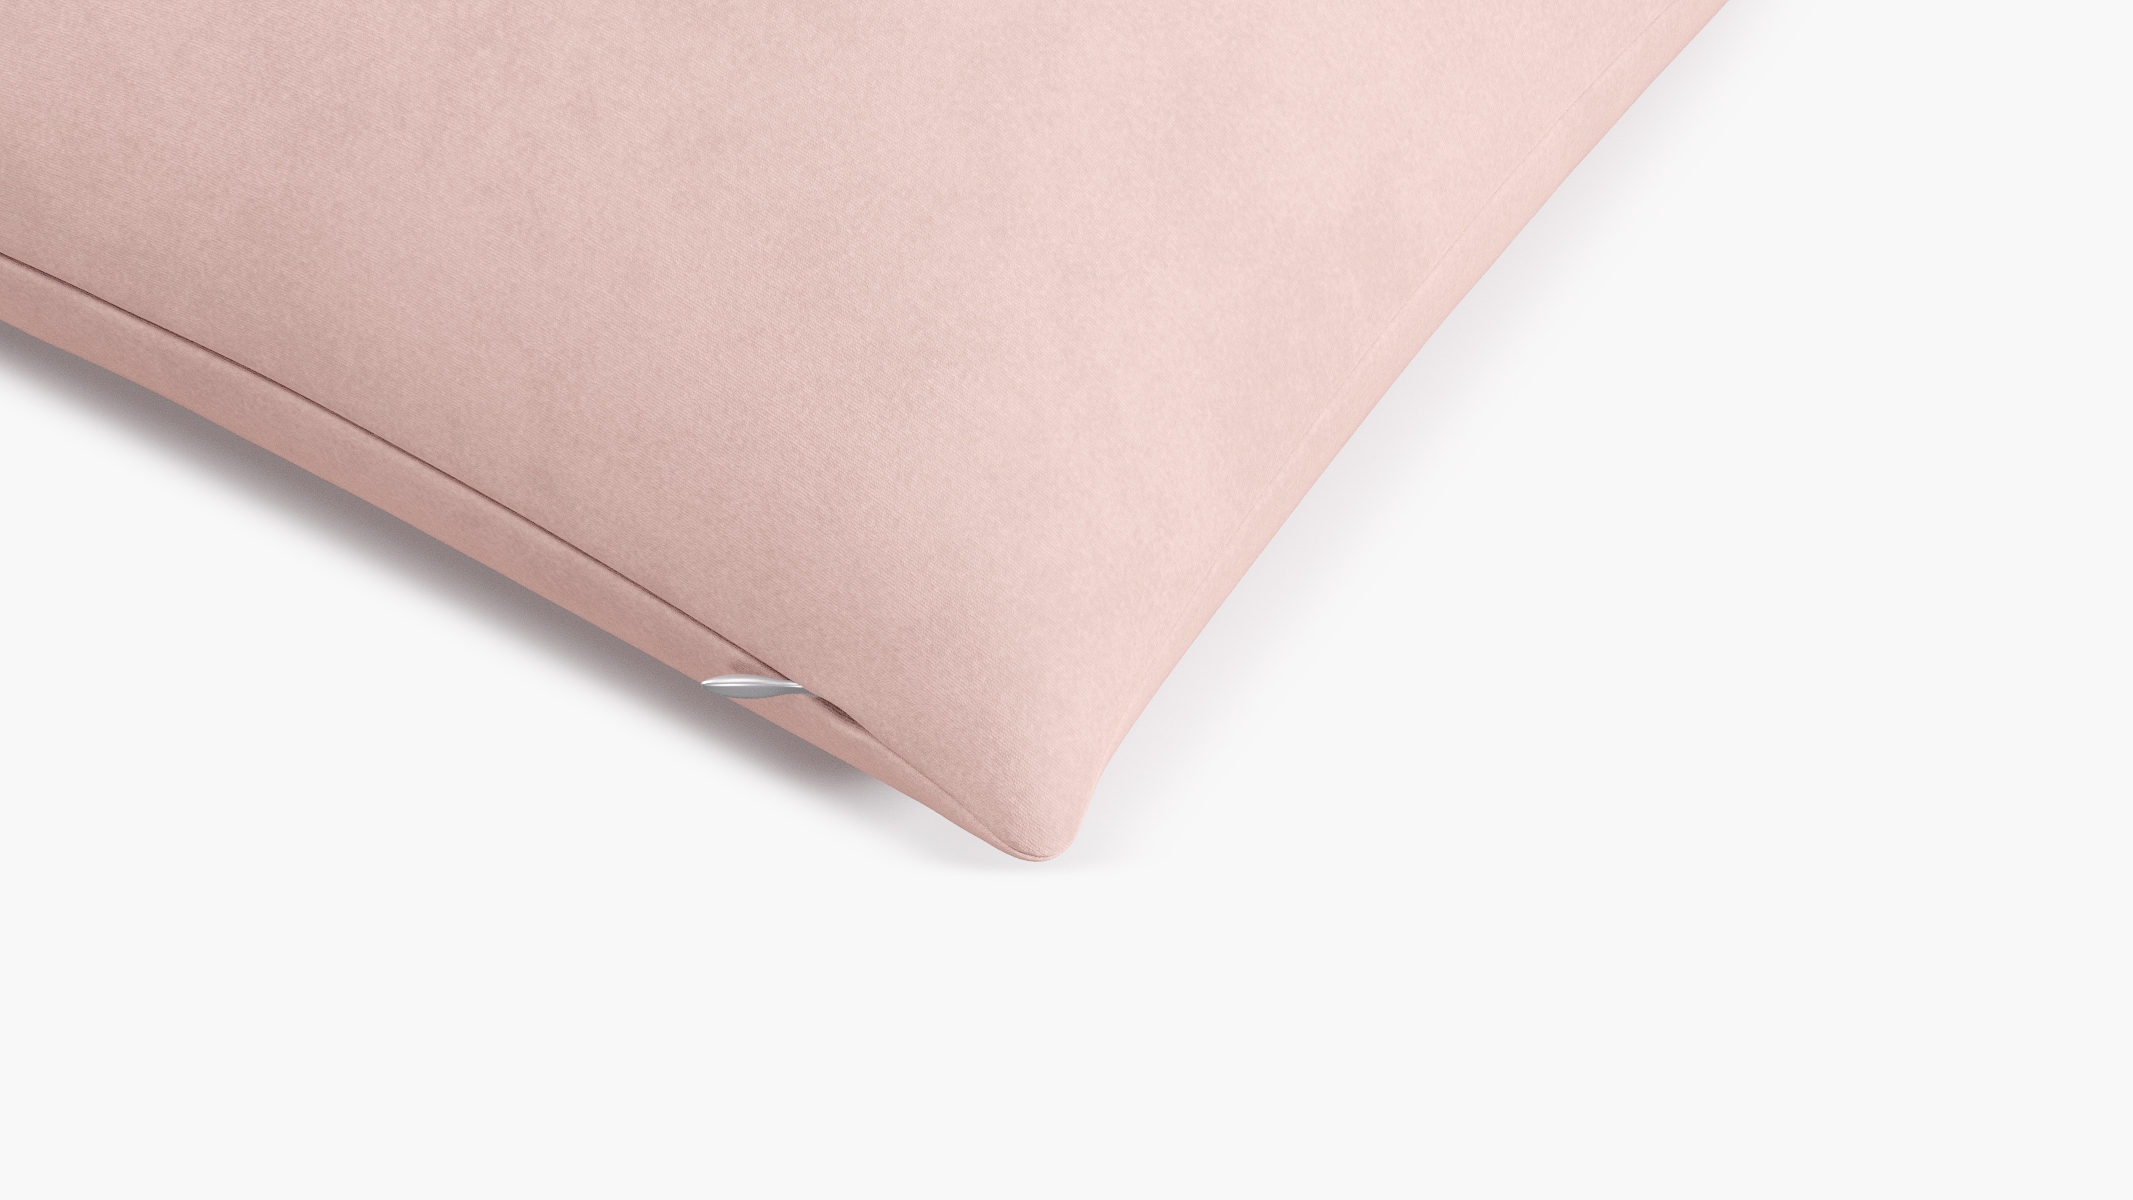 Blush Velvet Throw Pillow - 20" x 20" - Image 1